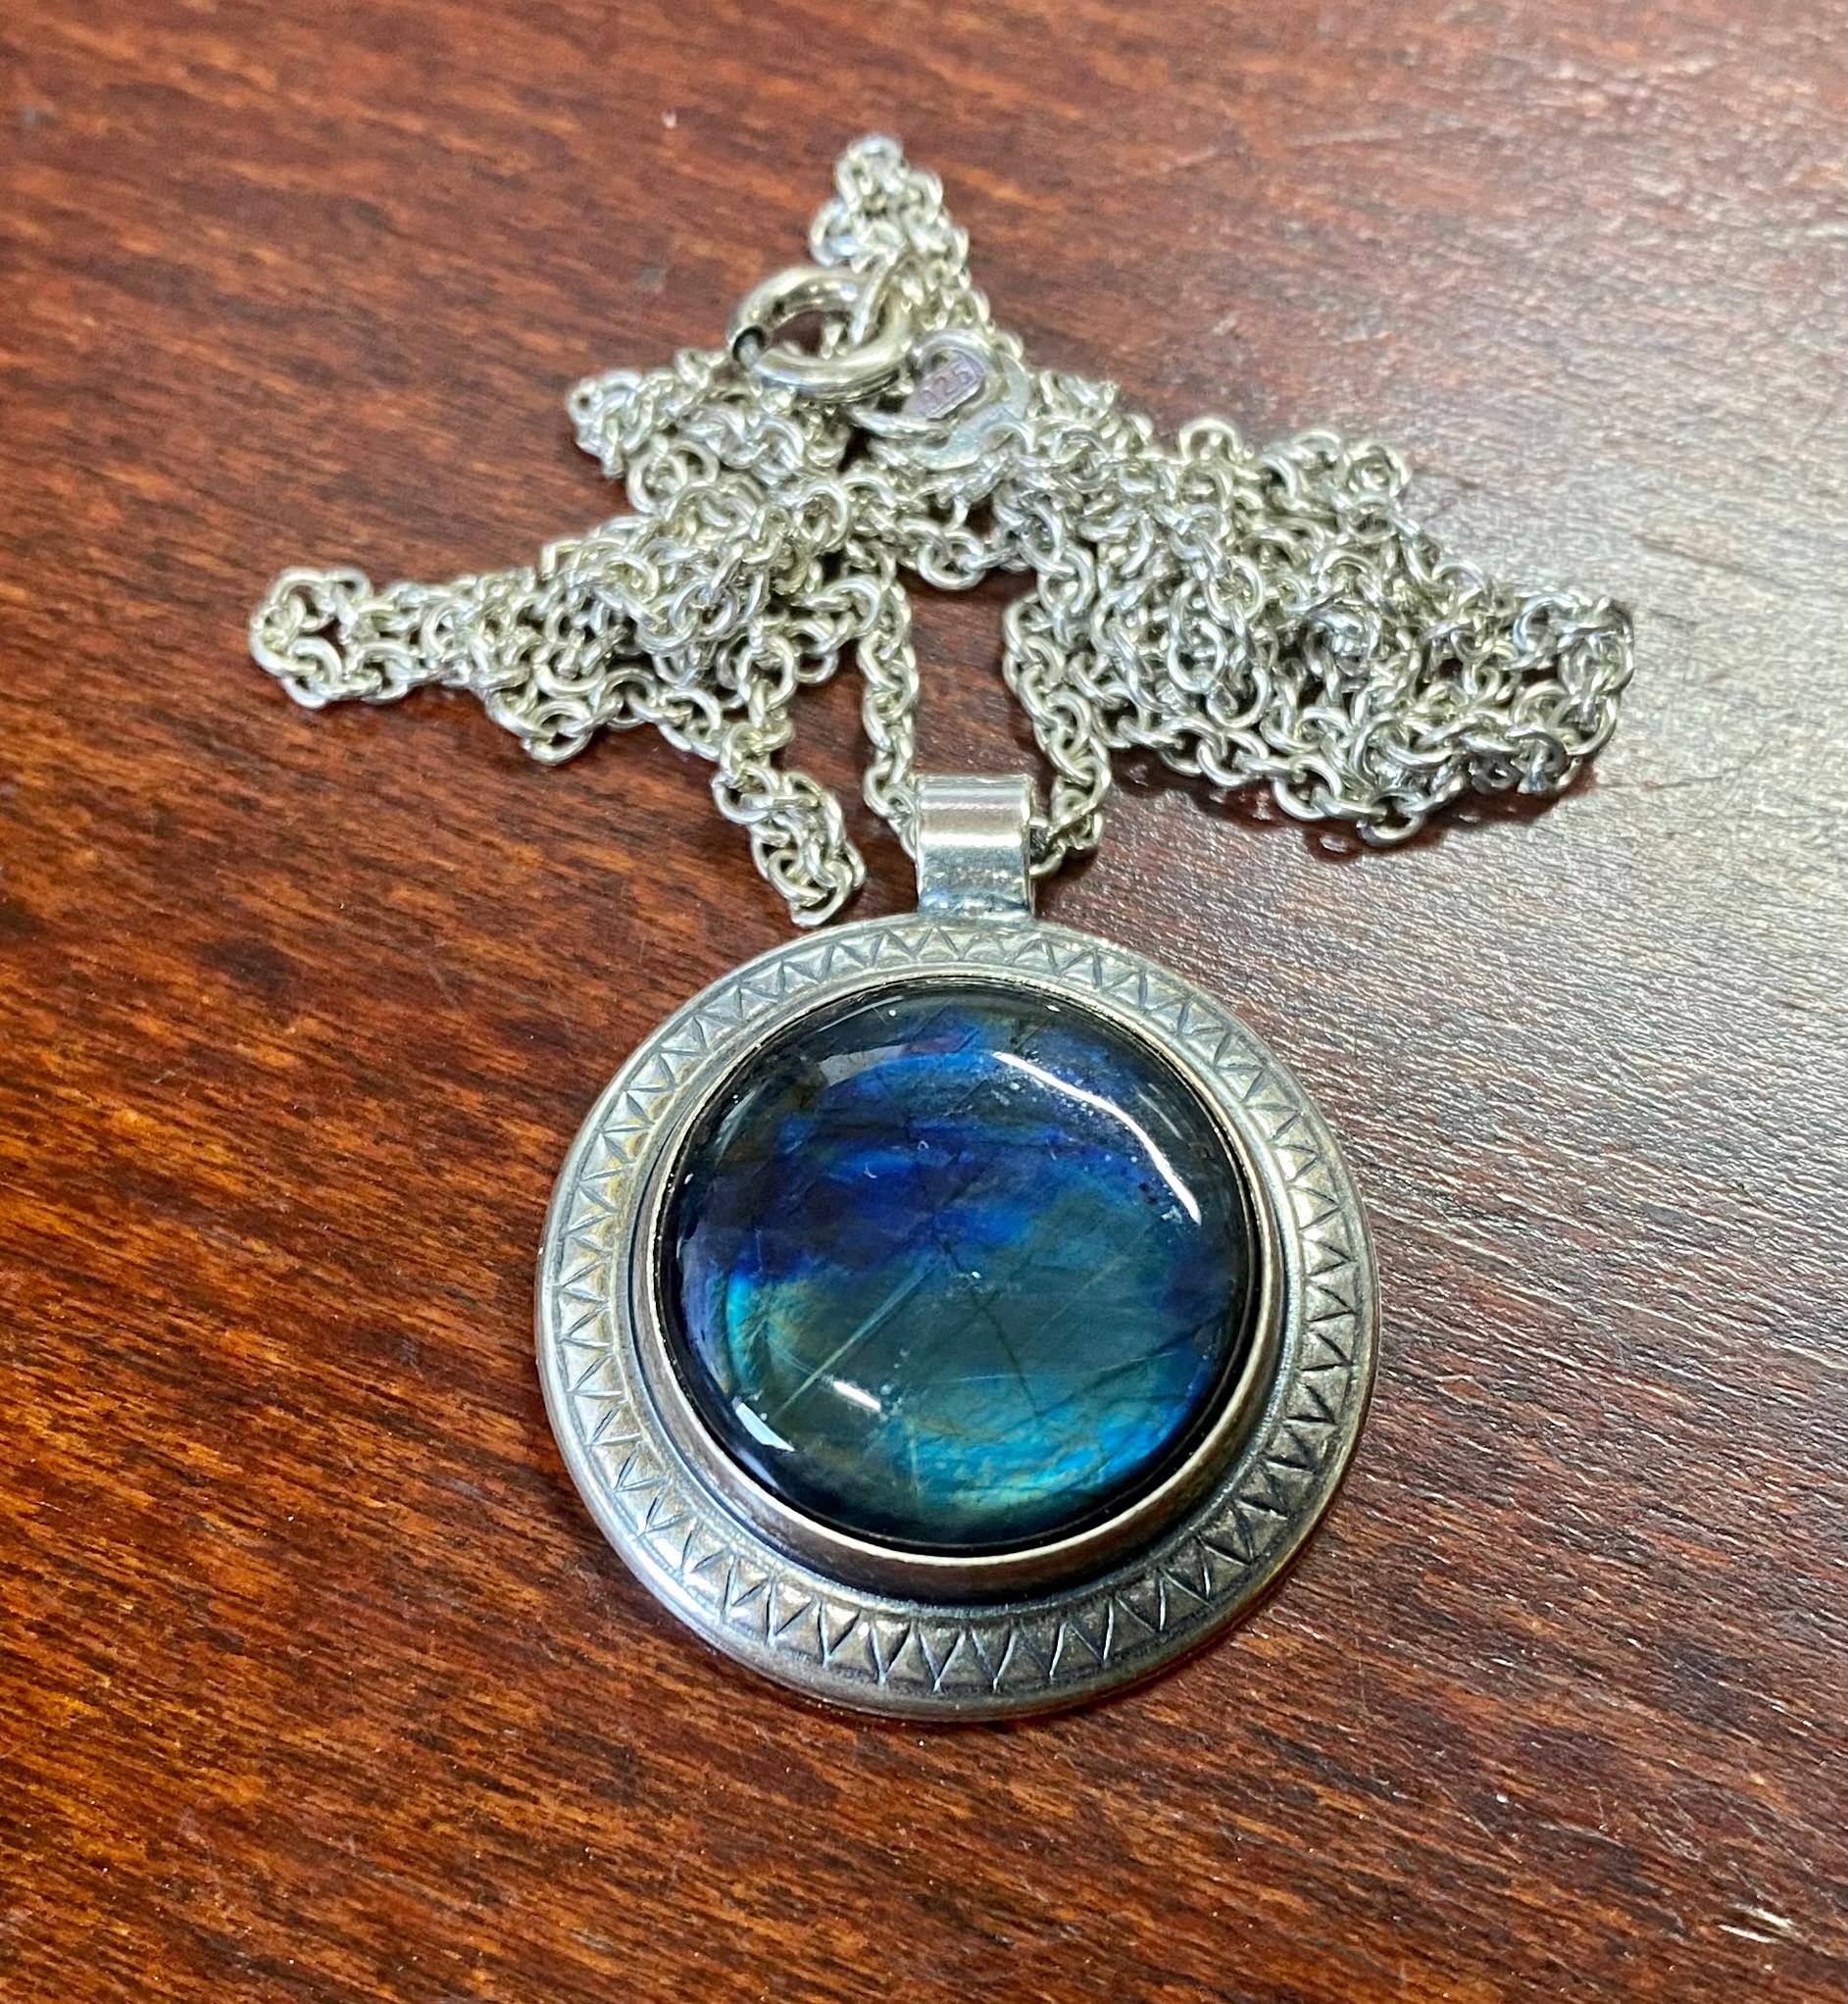 Silber 925H Spectrolite Halskette Finnland Kalevala Schmuck.

Ein wirklich schöner Stein.
Der blaugrüne Spectrolite schimmert wunderschön im Licht.
Ich habe auch Ohrringe aus der gleichen Serie zu verkaufen. Siehe das Weinbild.
Ein schönes